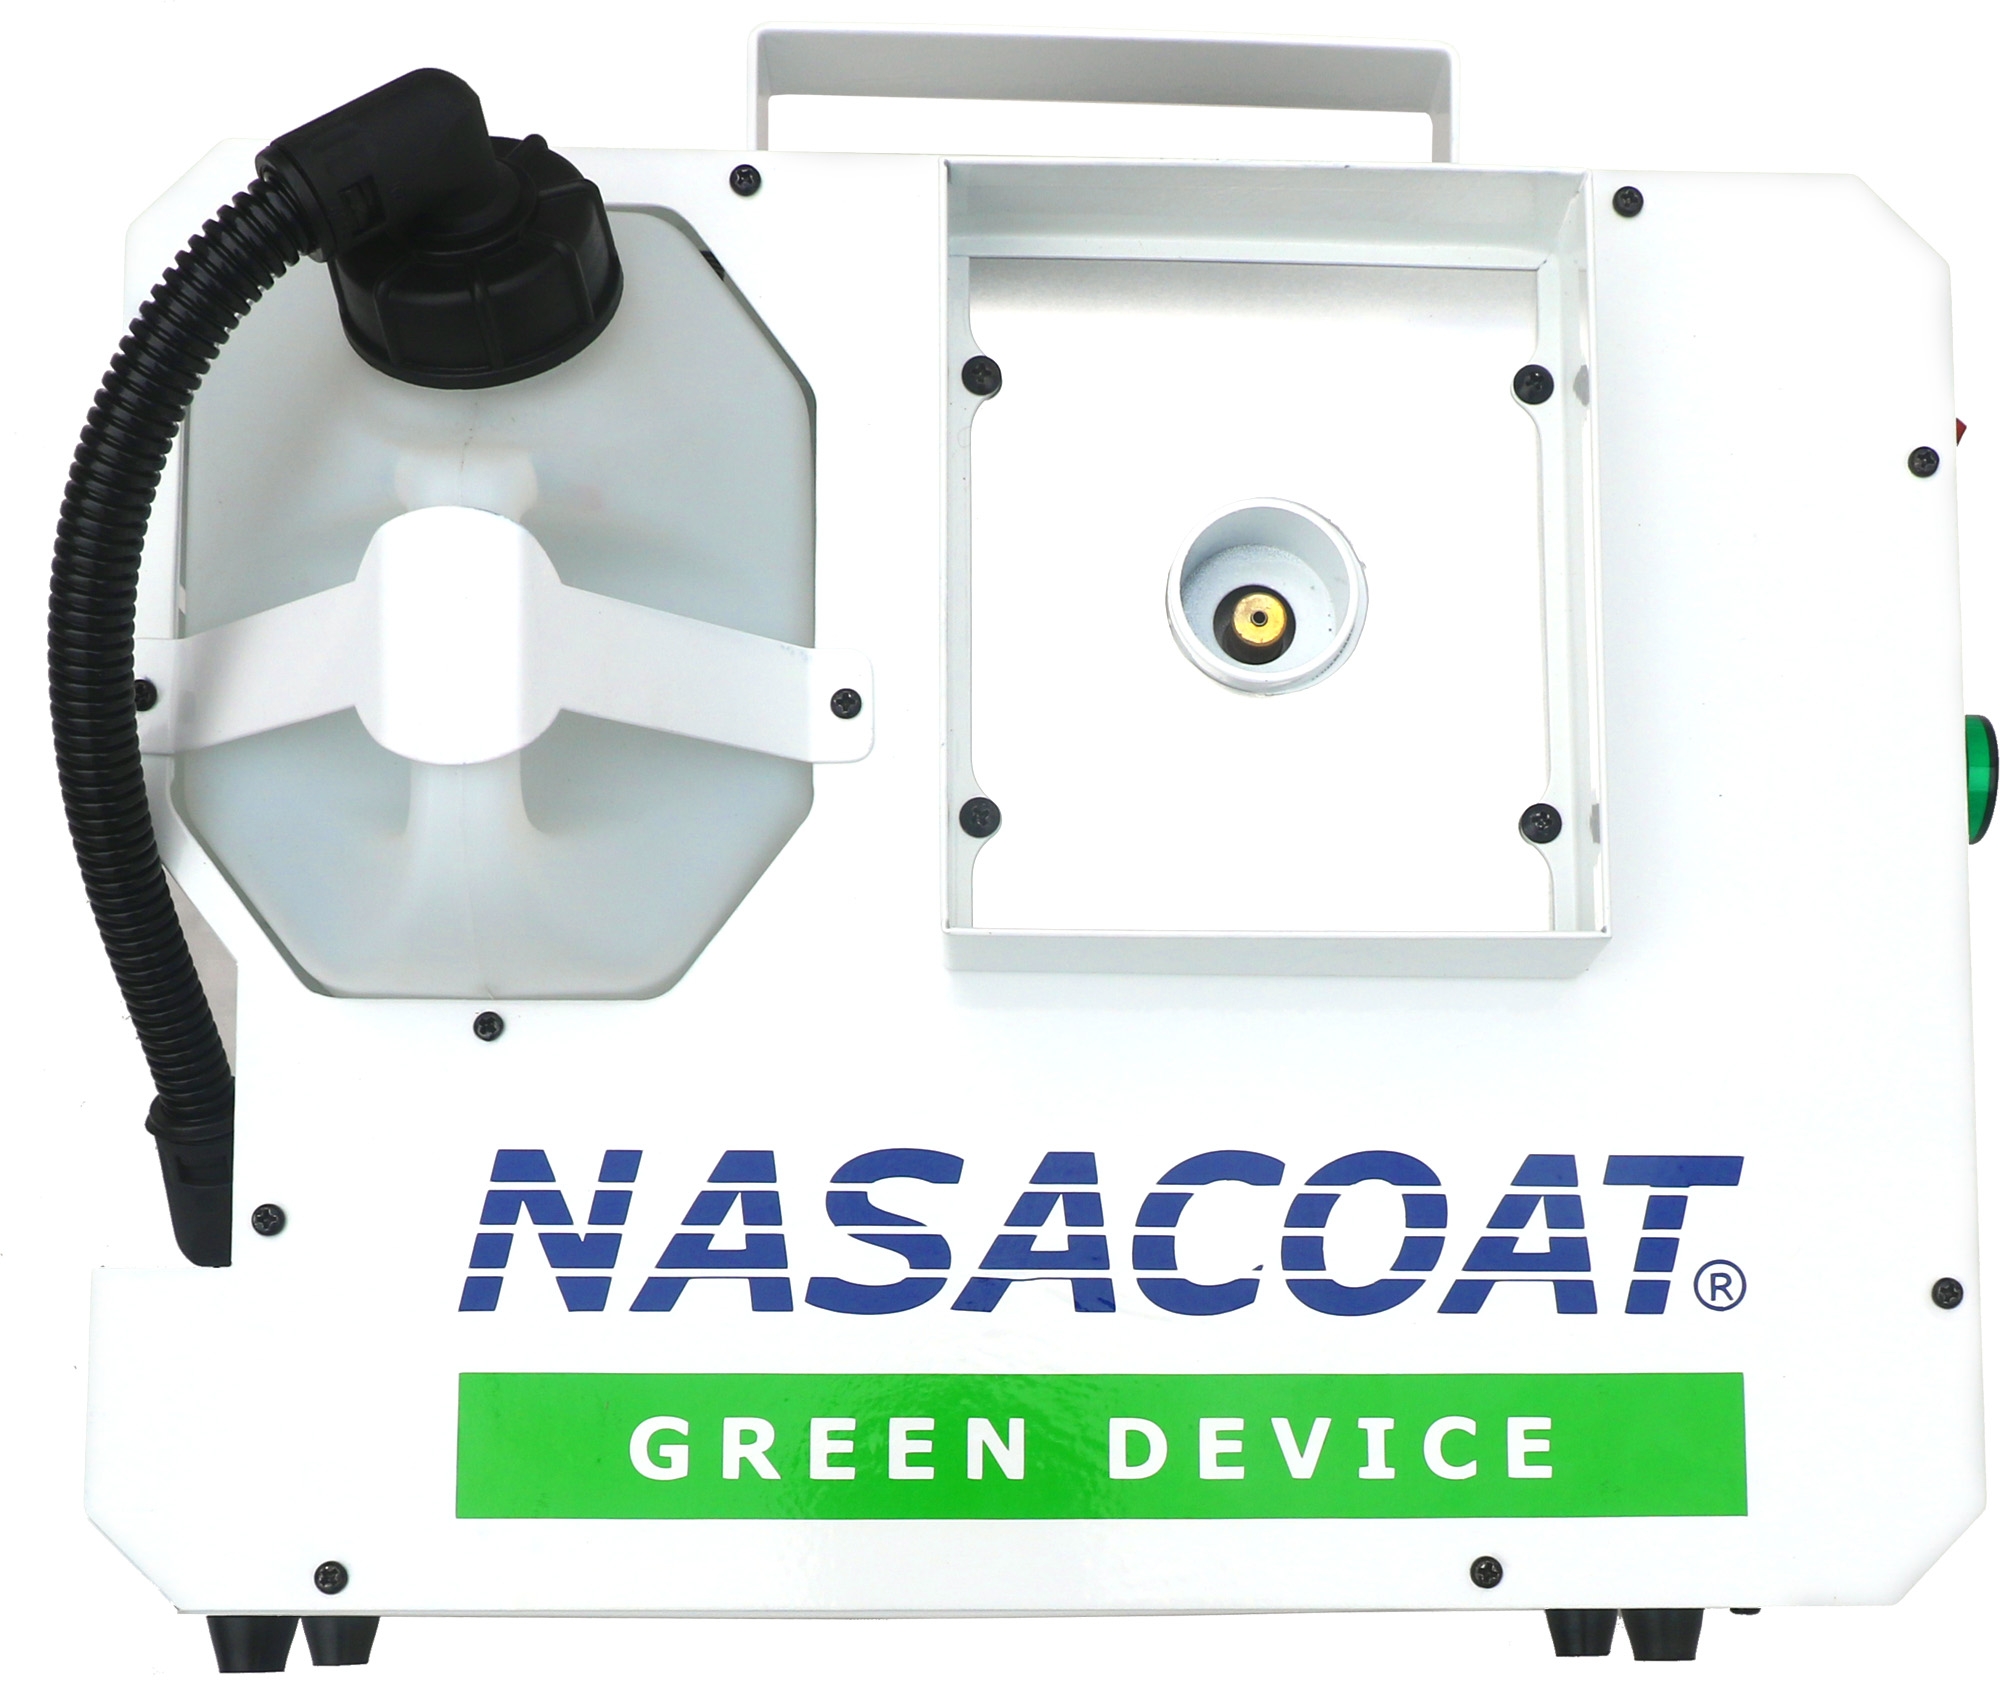 Nasacoat Green Device